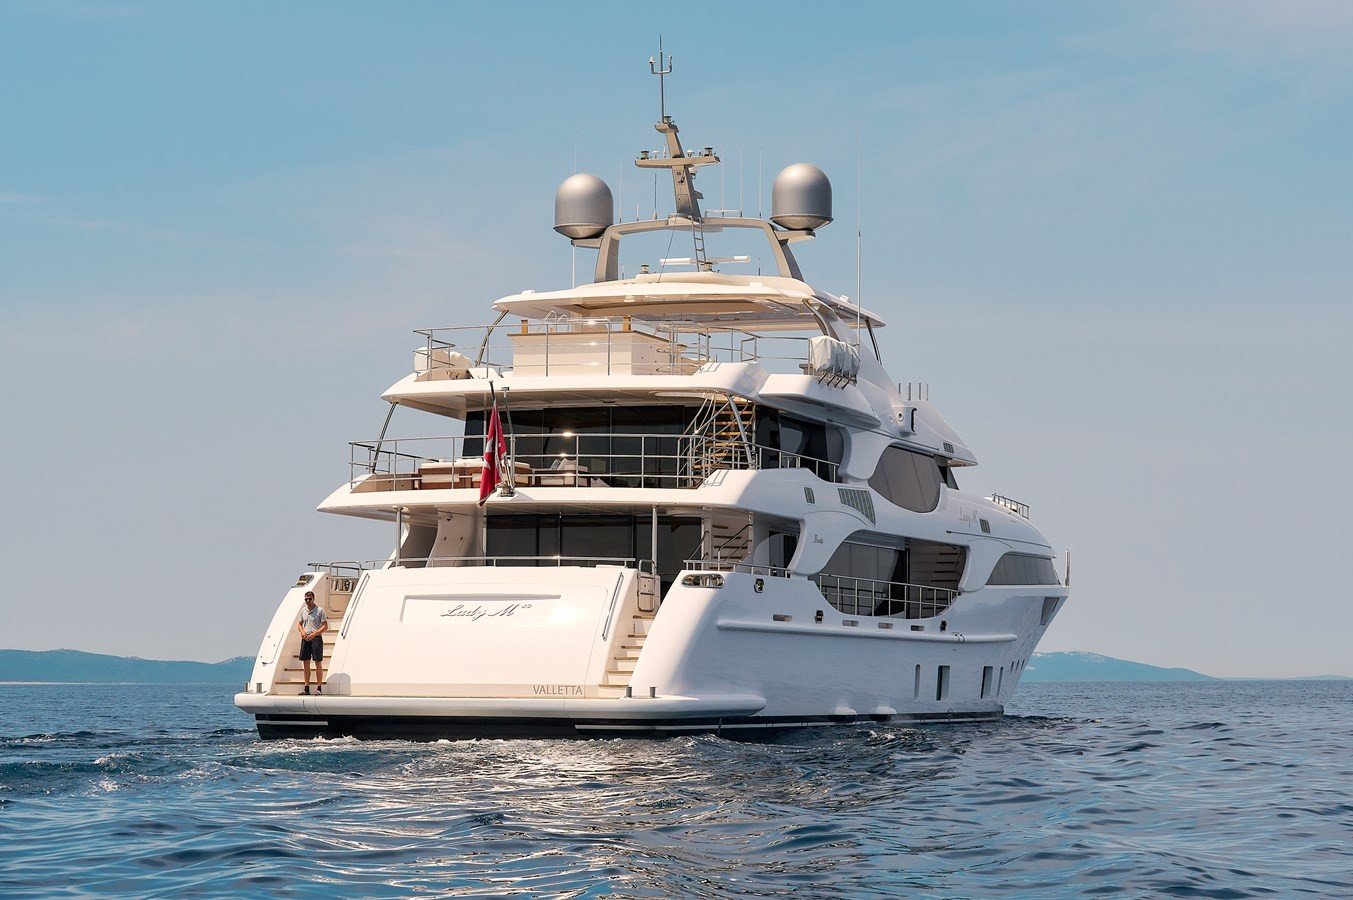 SEAGULL MRD Yacht - Benetti - 2020 - Propietario SZÍJJ LÁSZLÓ